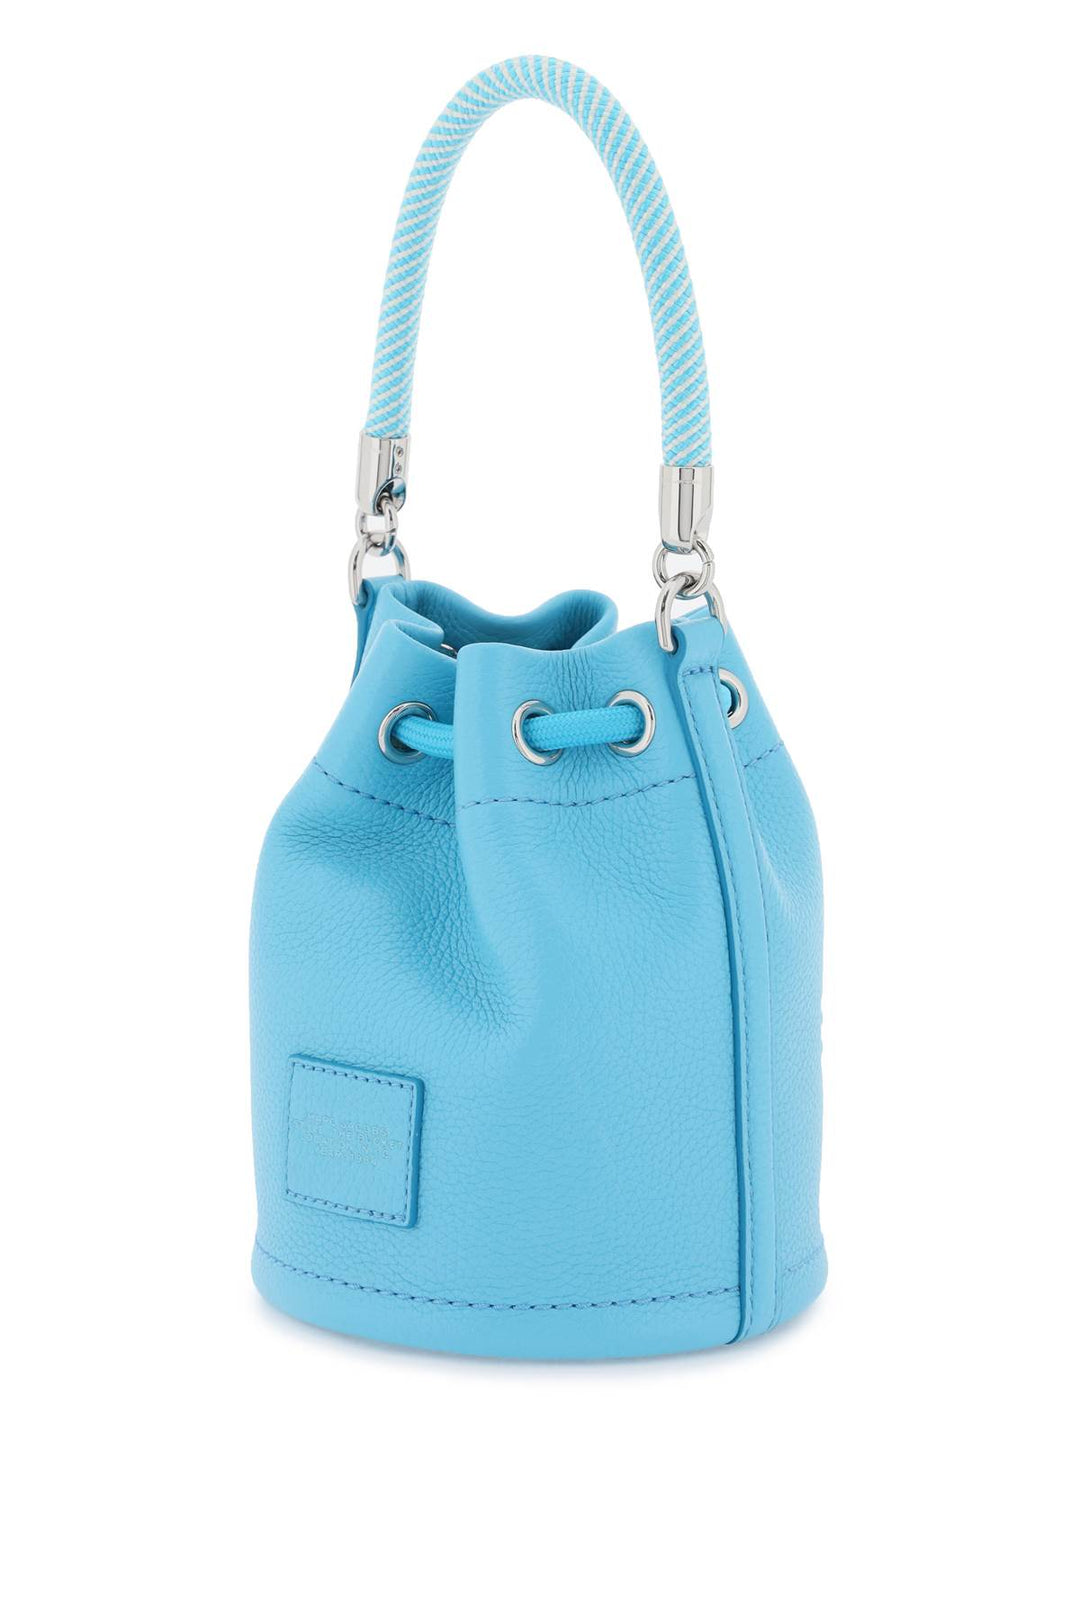 Borsa A Secchiello 'The Leather Mini Bucket Bag' - Marc Jacobs - Donna